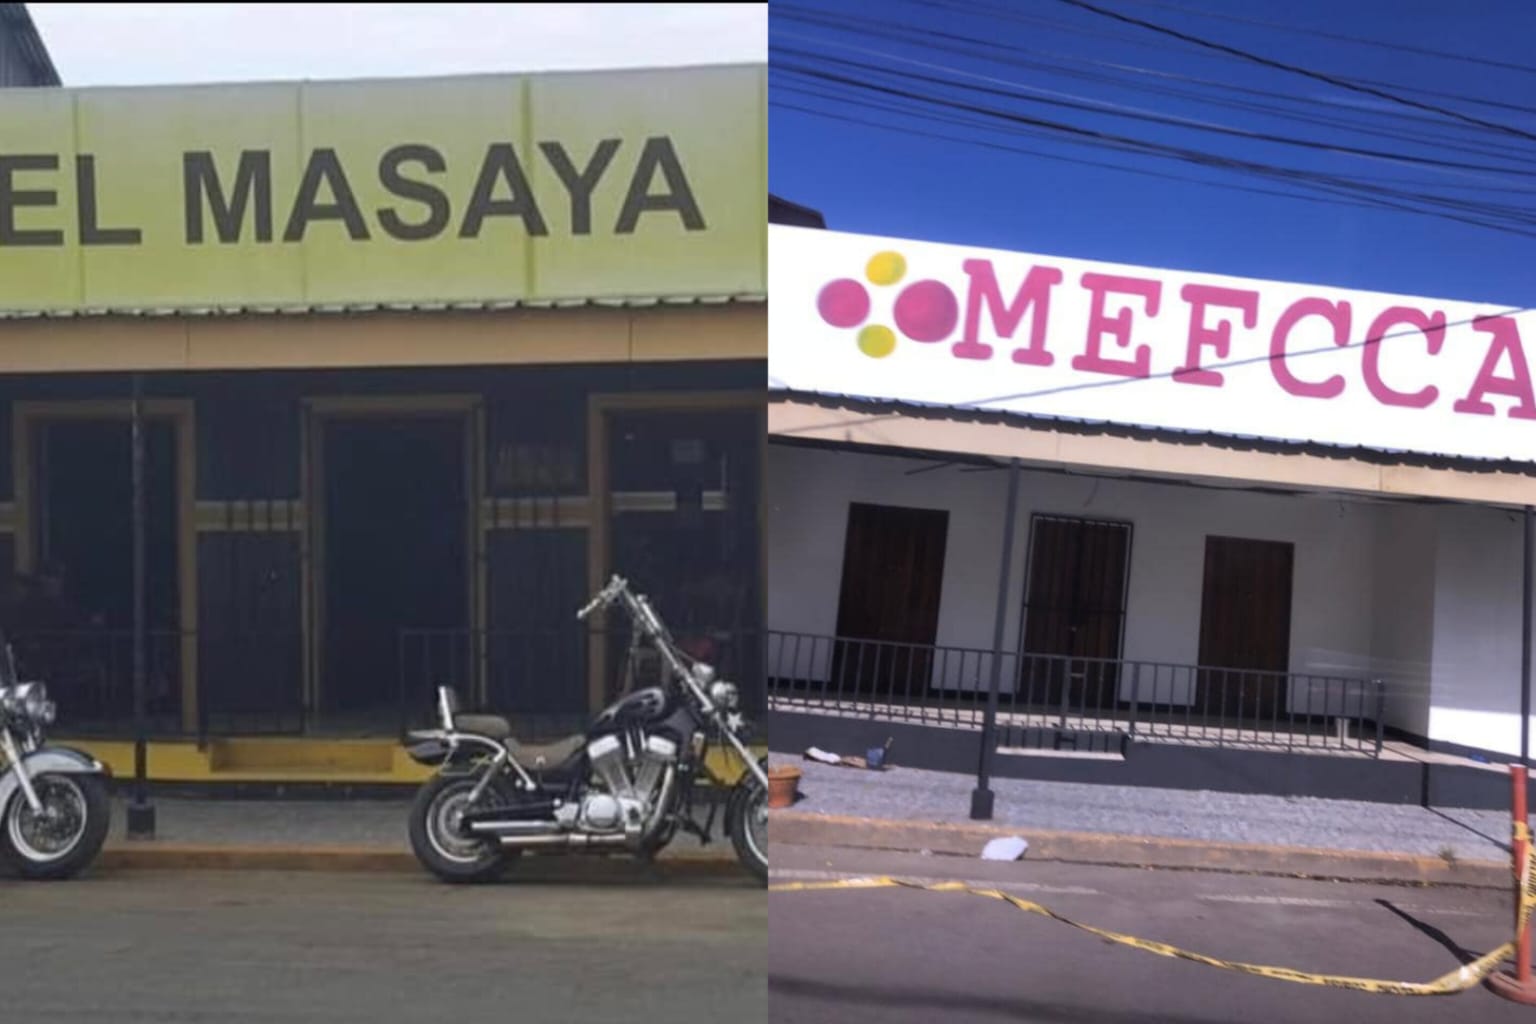 hotel masaya propiedad confiscada mefcca